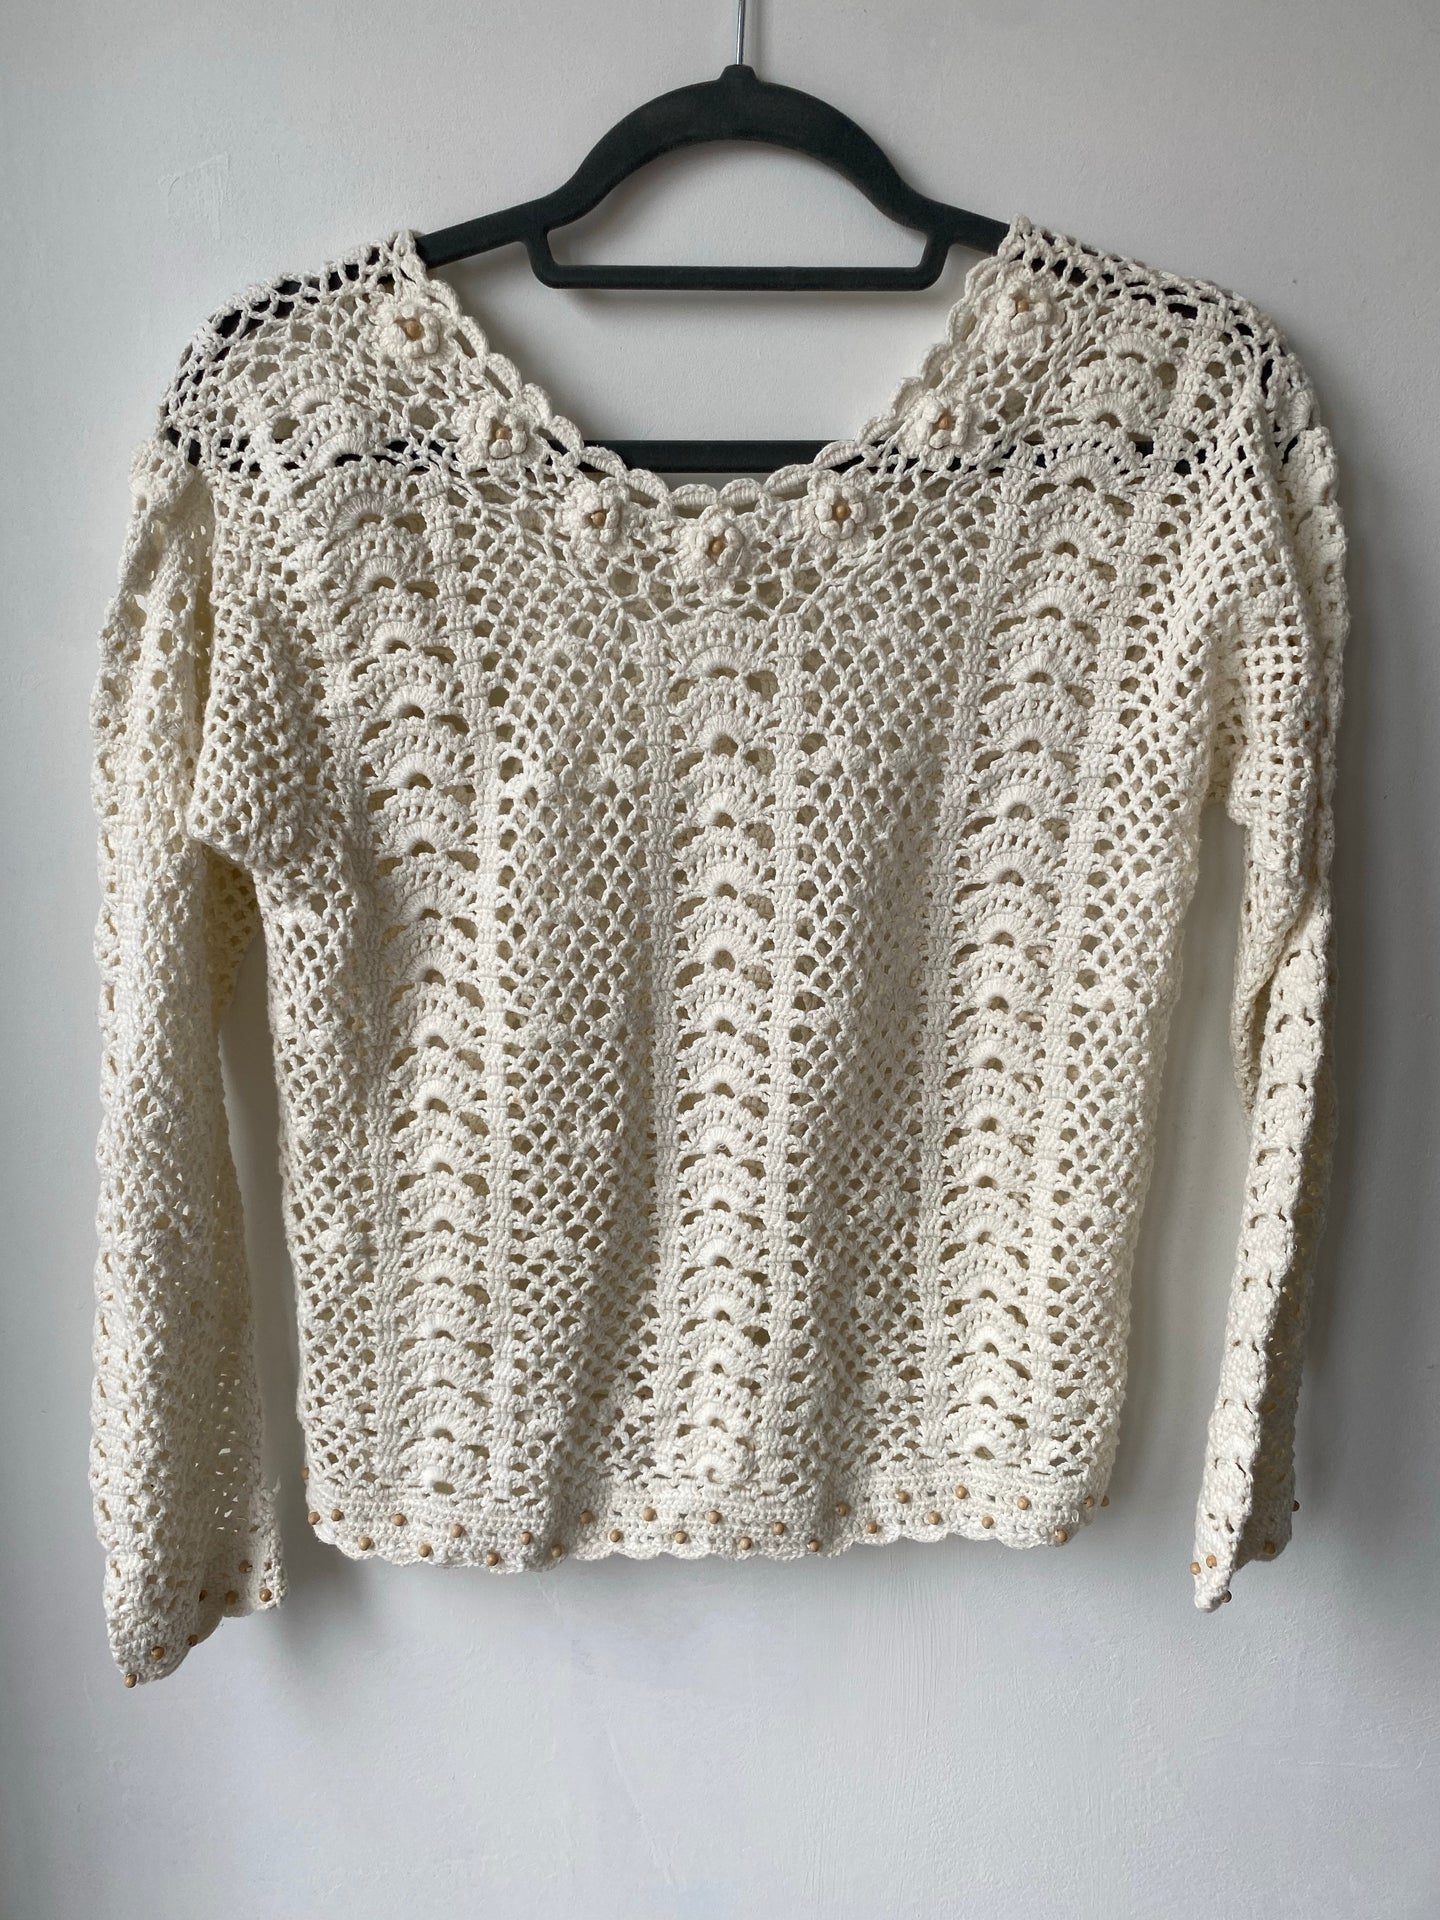 Cream crochet top